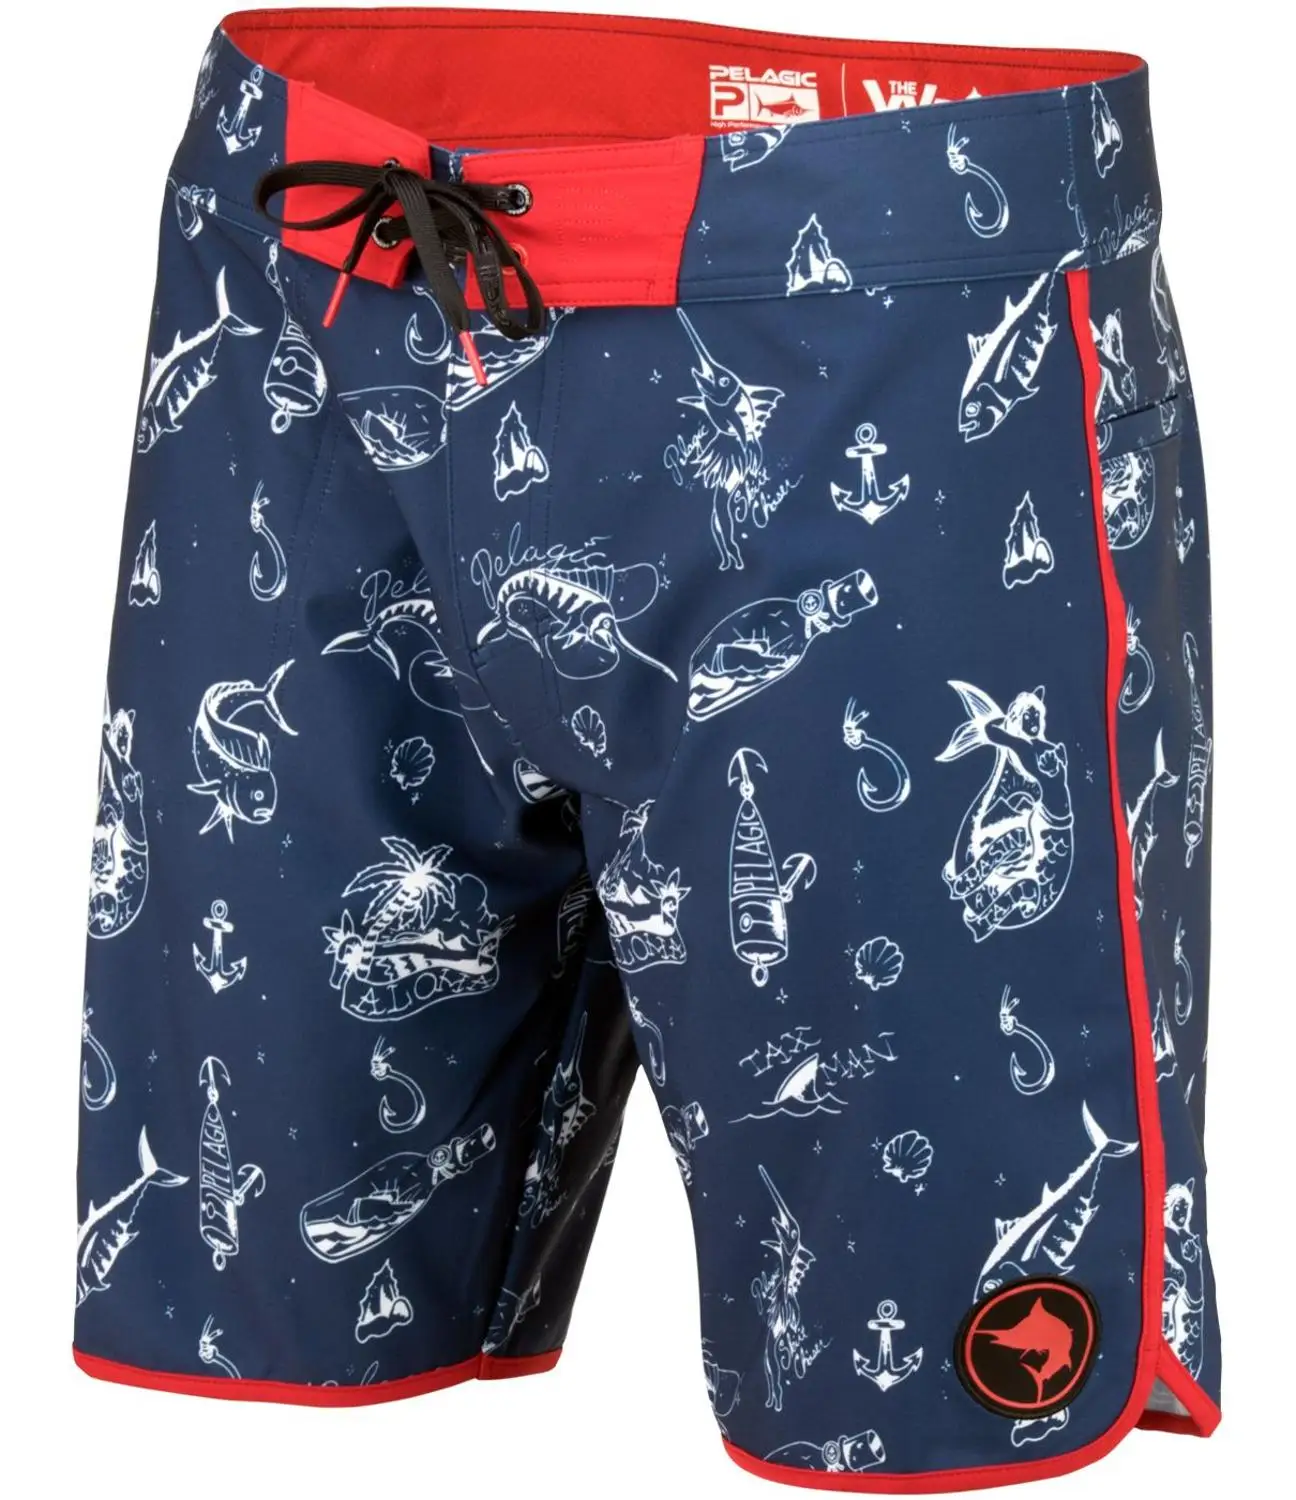 Pel* gic мужские шорты для рыбалки быстросохнущие шорты для серфинга быстросохнущие UPF50 уличные походные спортивные шорты для рыбалки Размер США 30-40 - Цвет: Navy